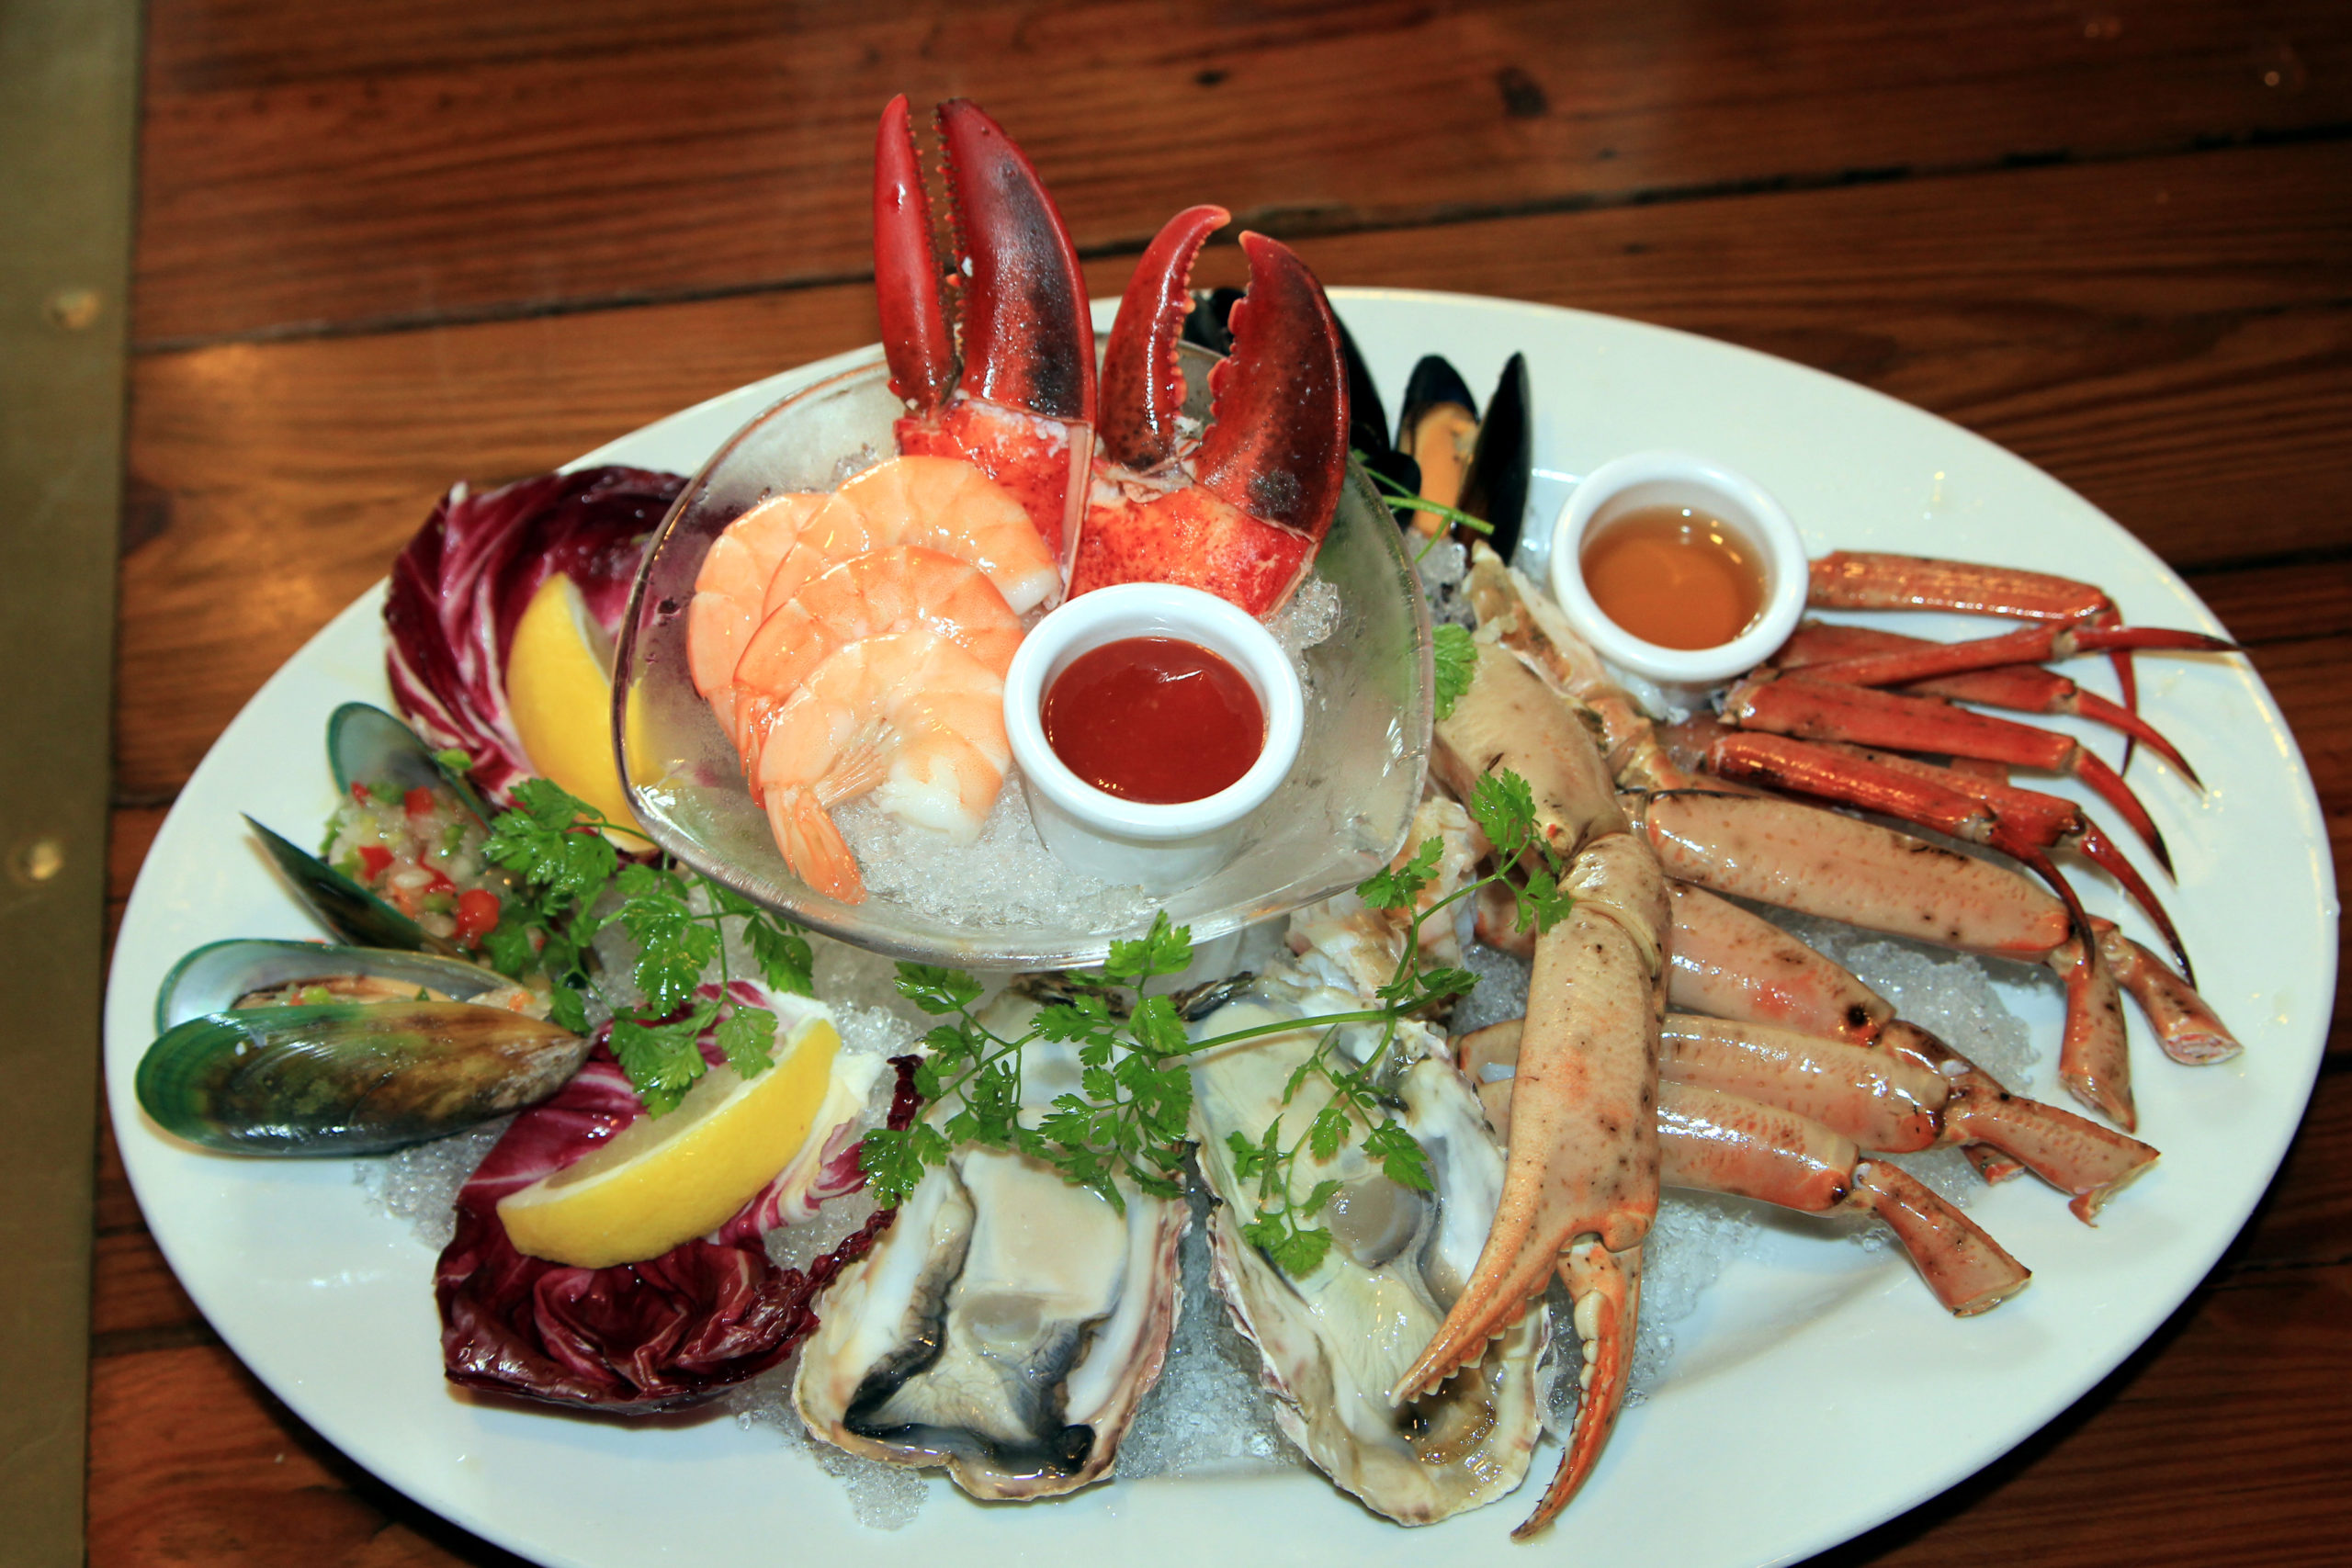 実食レポ レッドロブスター Red Lobster 練馬関町店 開店36周年記念に絶品シーフードを満喫 Liveen Times